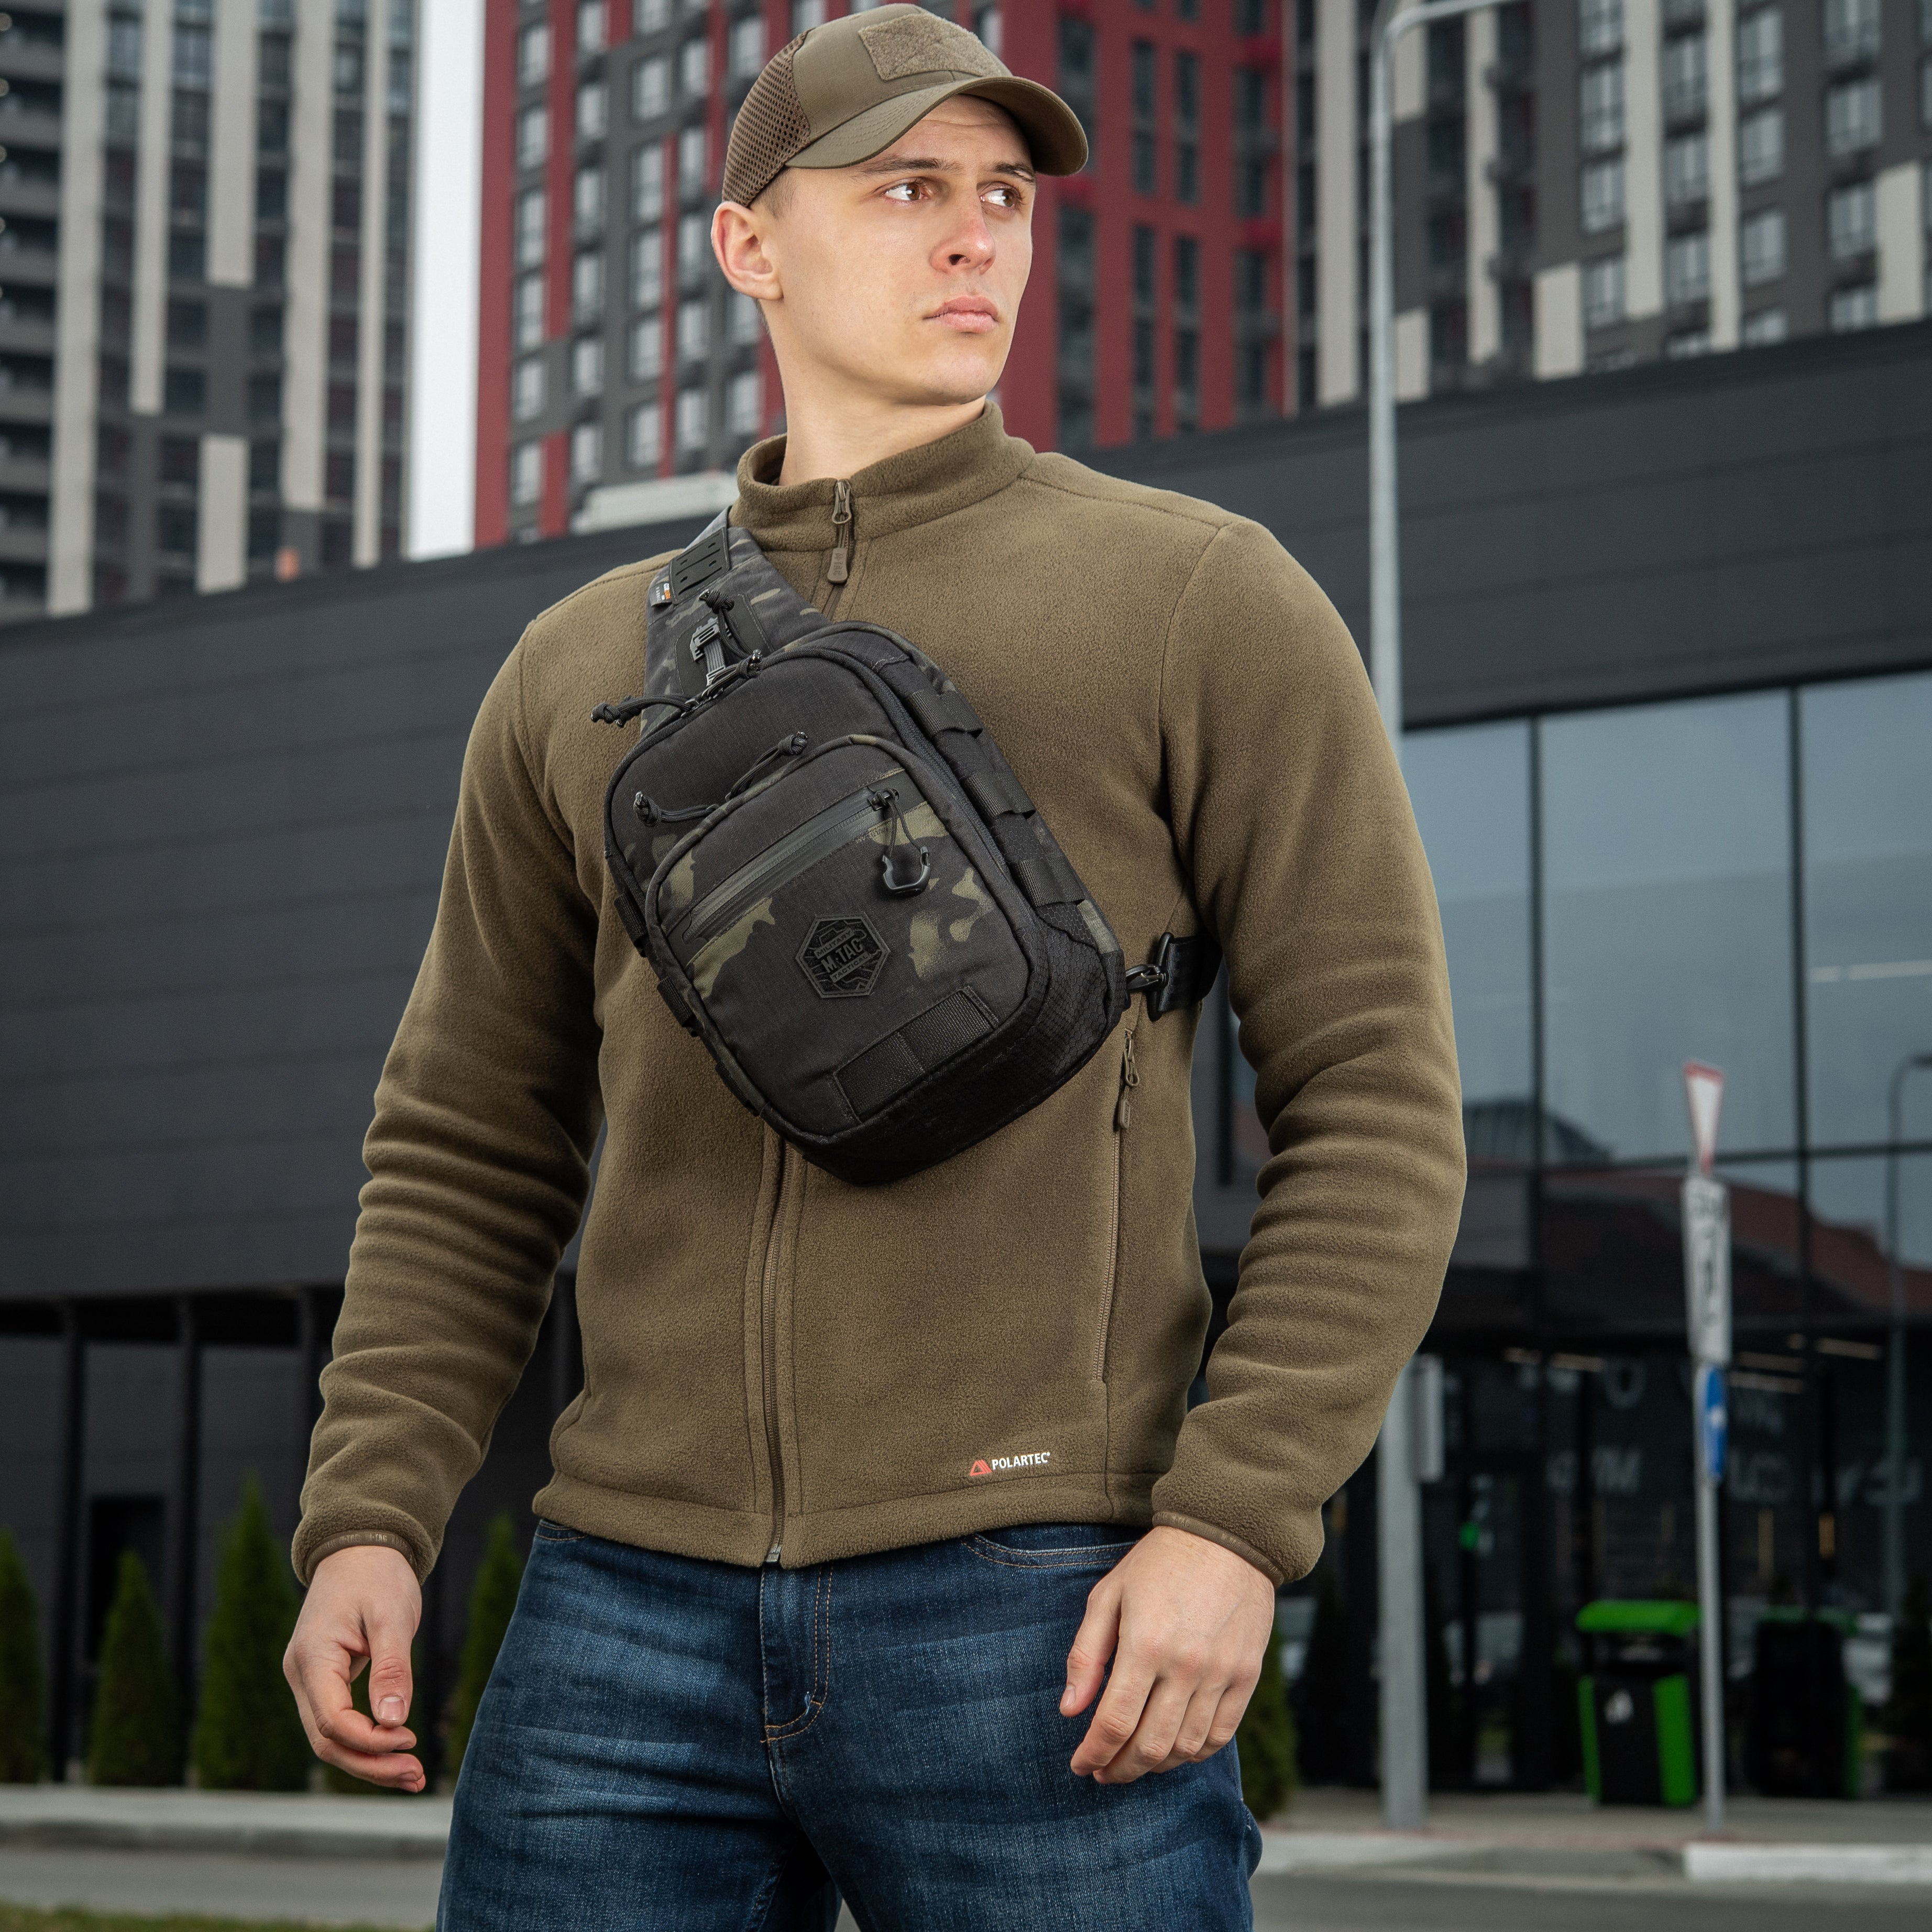 M-Tac Tactical Bag Shoulder Chest Pack with Sling Melange Grey